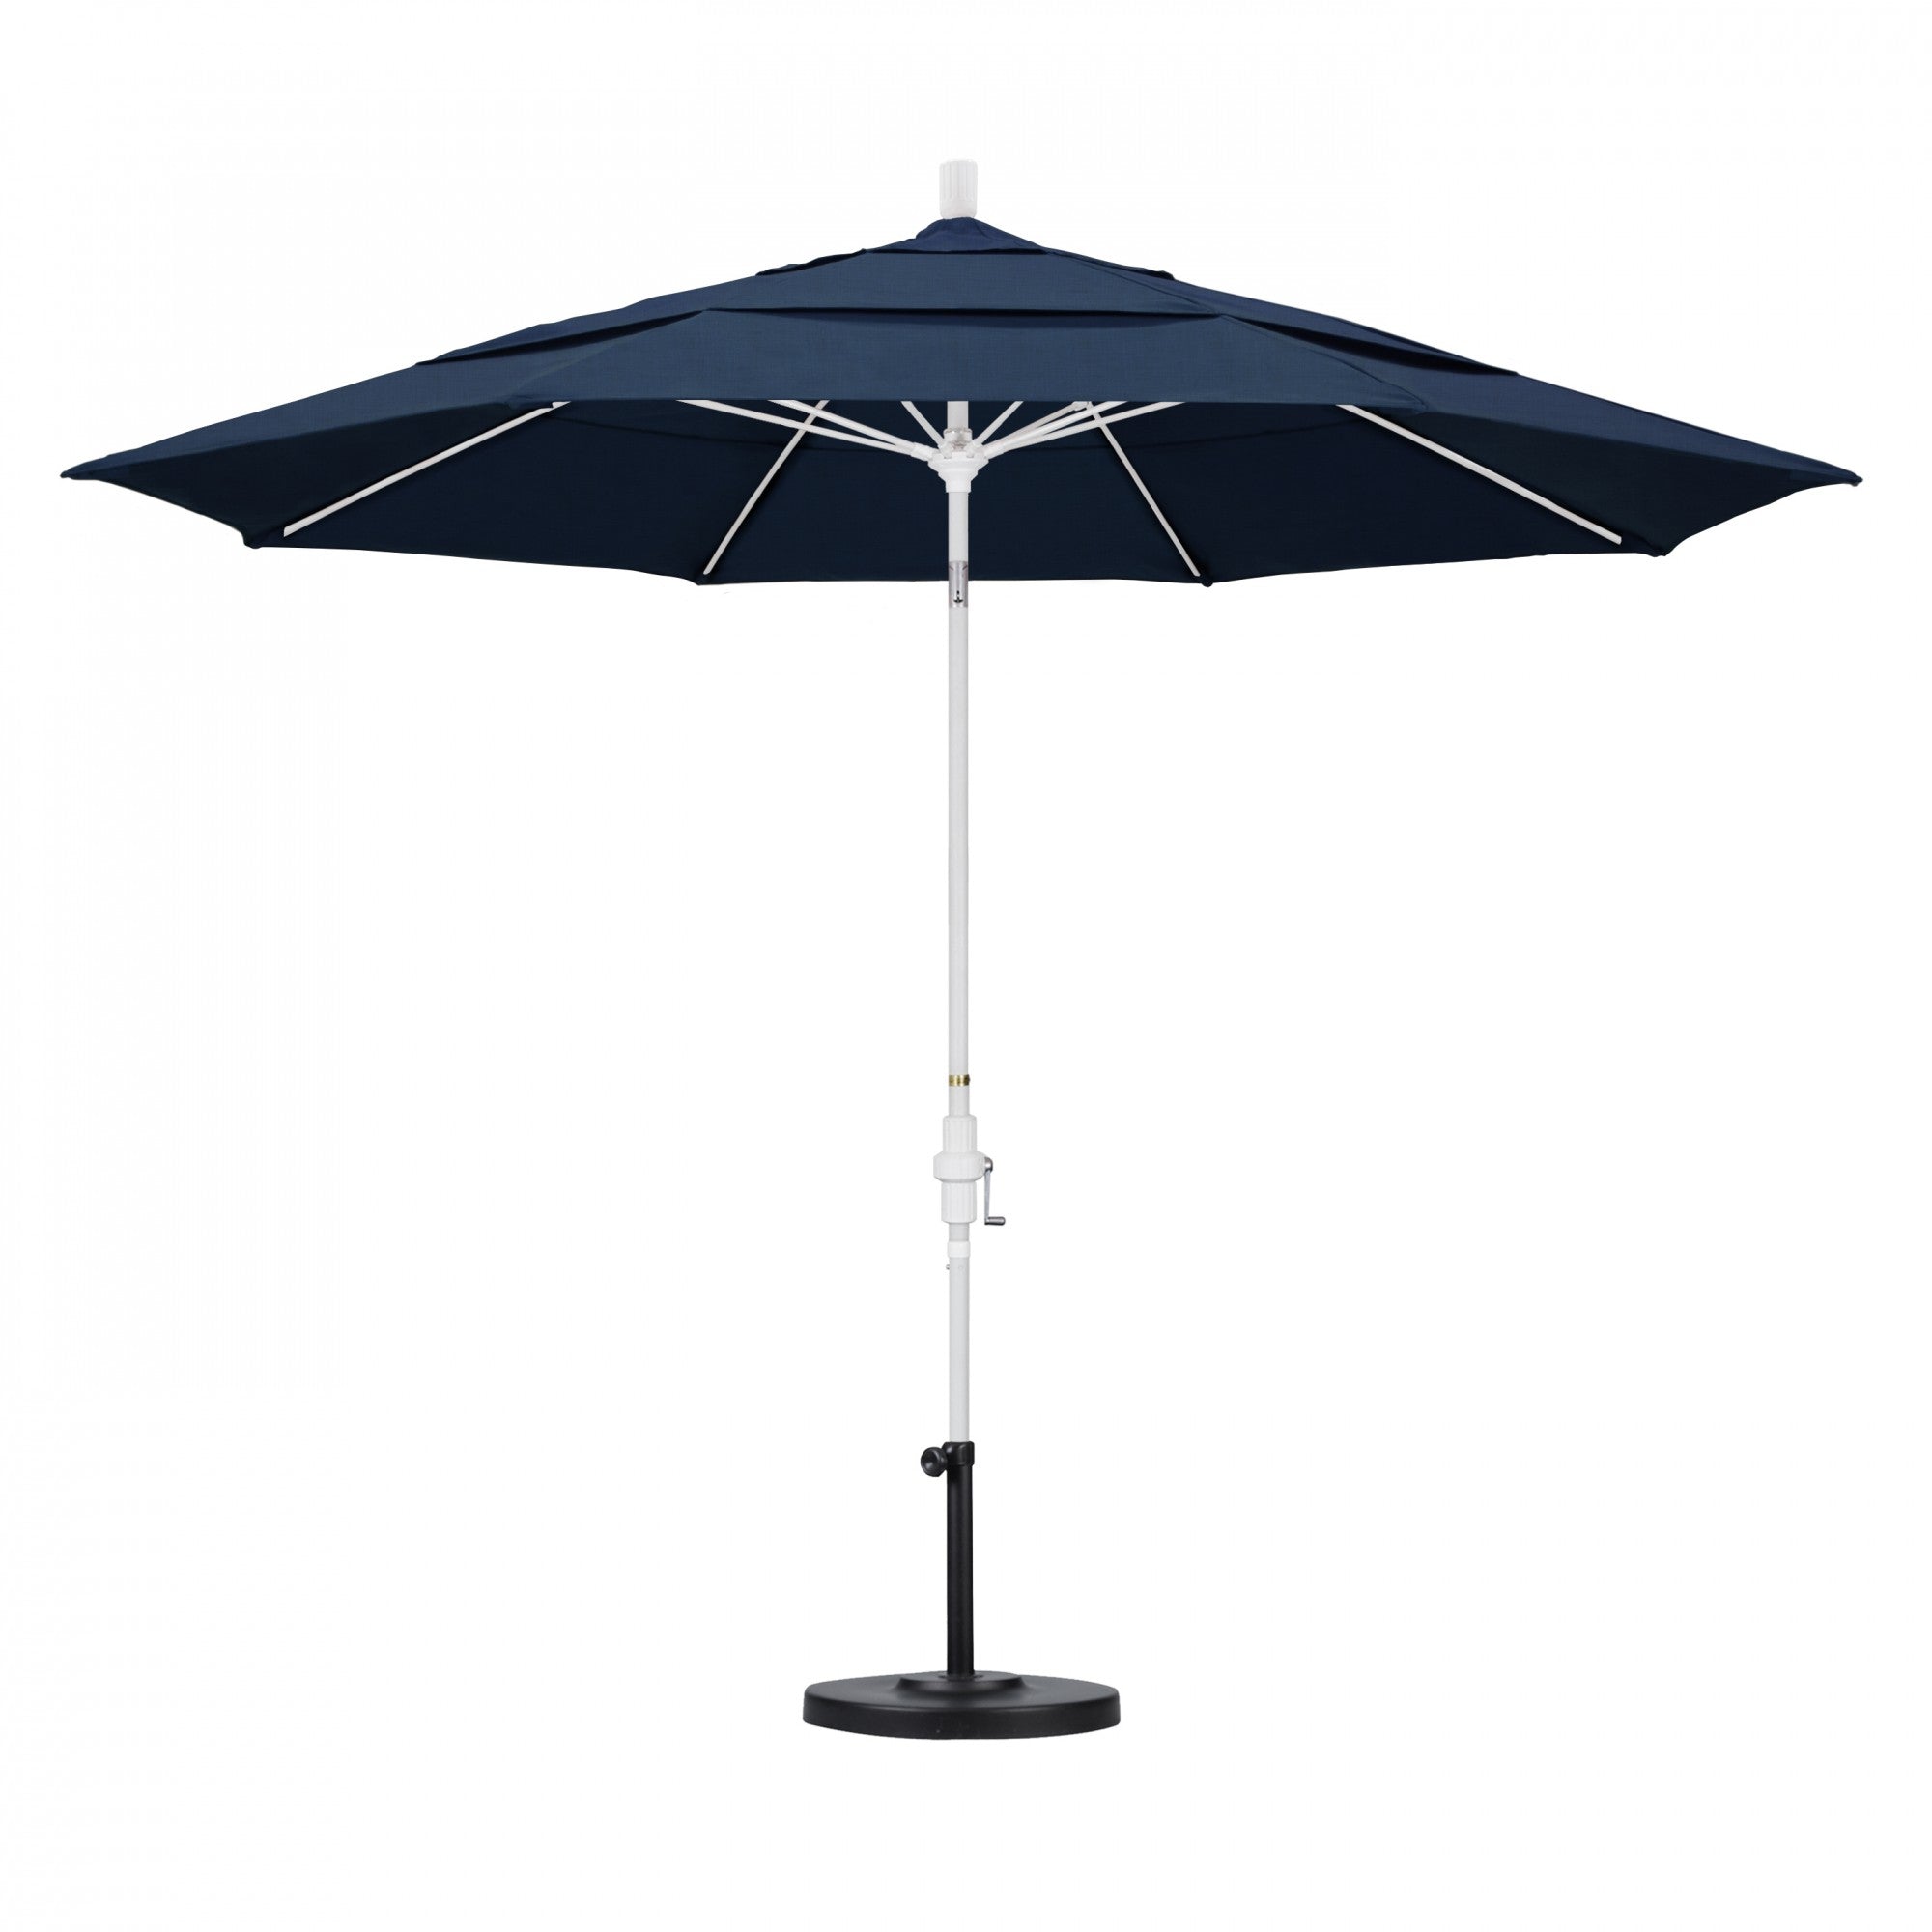 California Umbrella - 11' - Patio Umbrella Umbrella - Aluminum Pole - Spectrum Indigo - Sunbrella  - GSCUF118170-48080-DWV